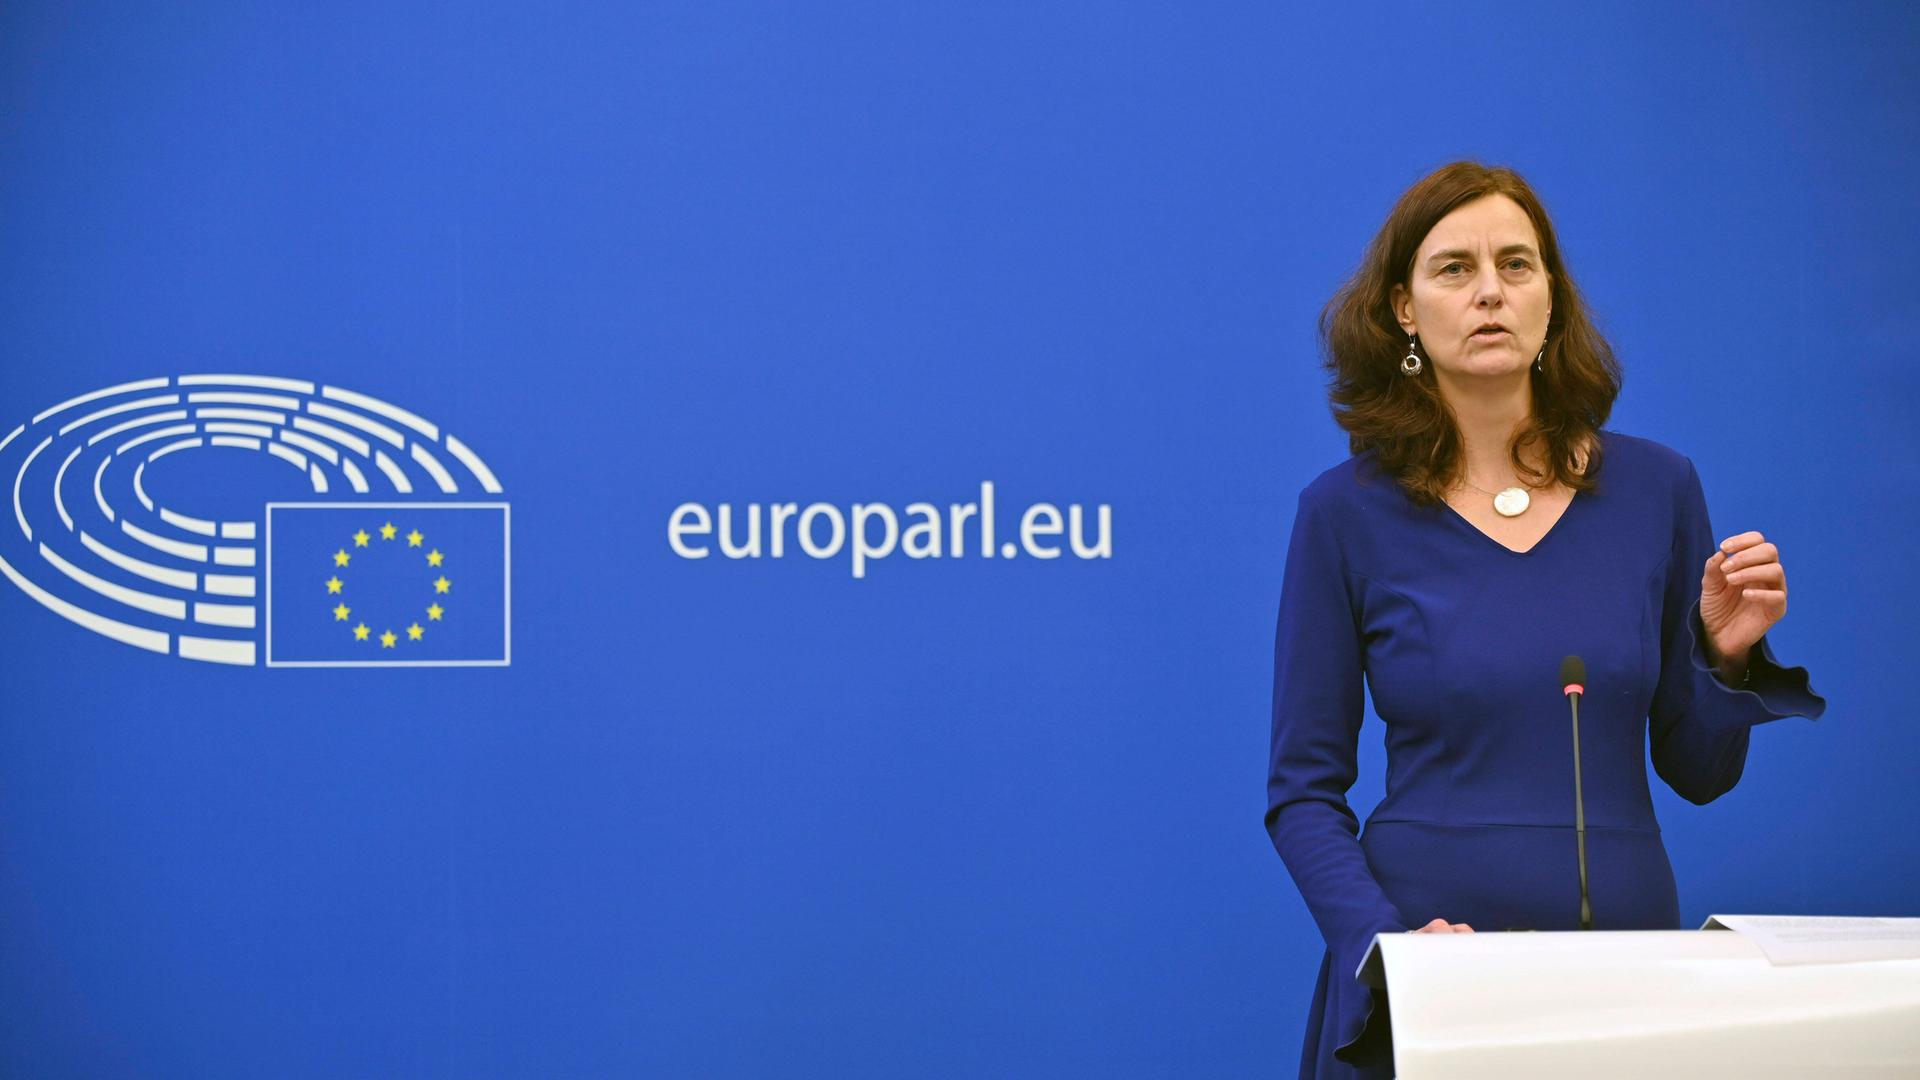 Die Europaabgeordnete Alexandra Geese steht während einer Pressekonferenz im Europäischen Parlament im blauen Kleid am Mikrofon.